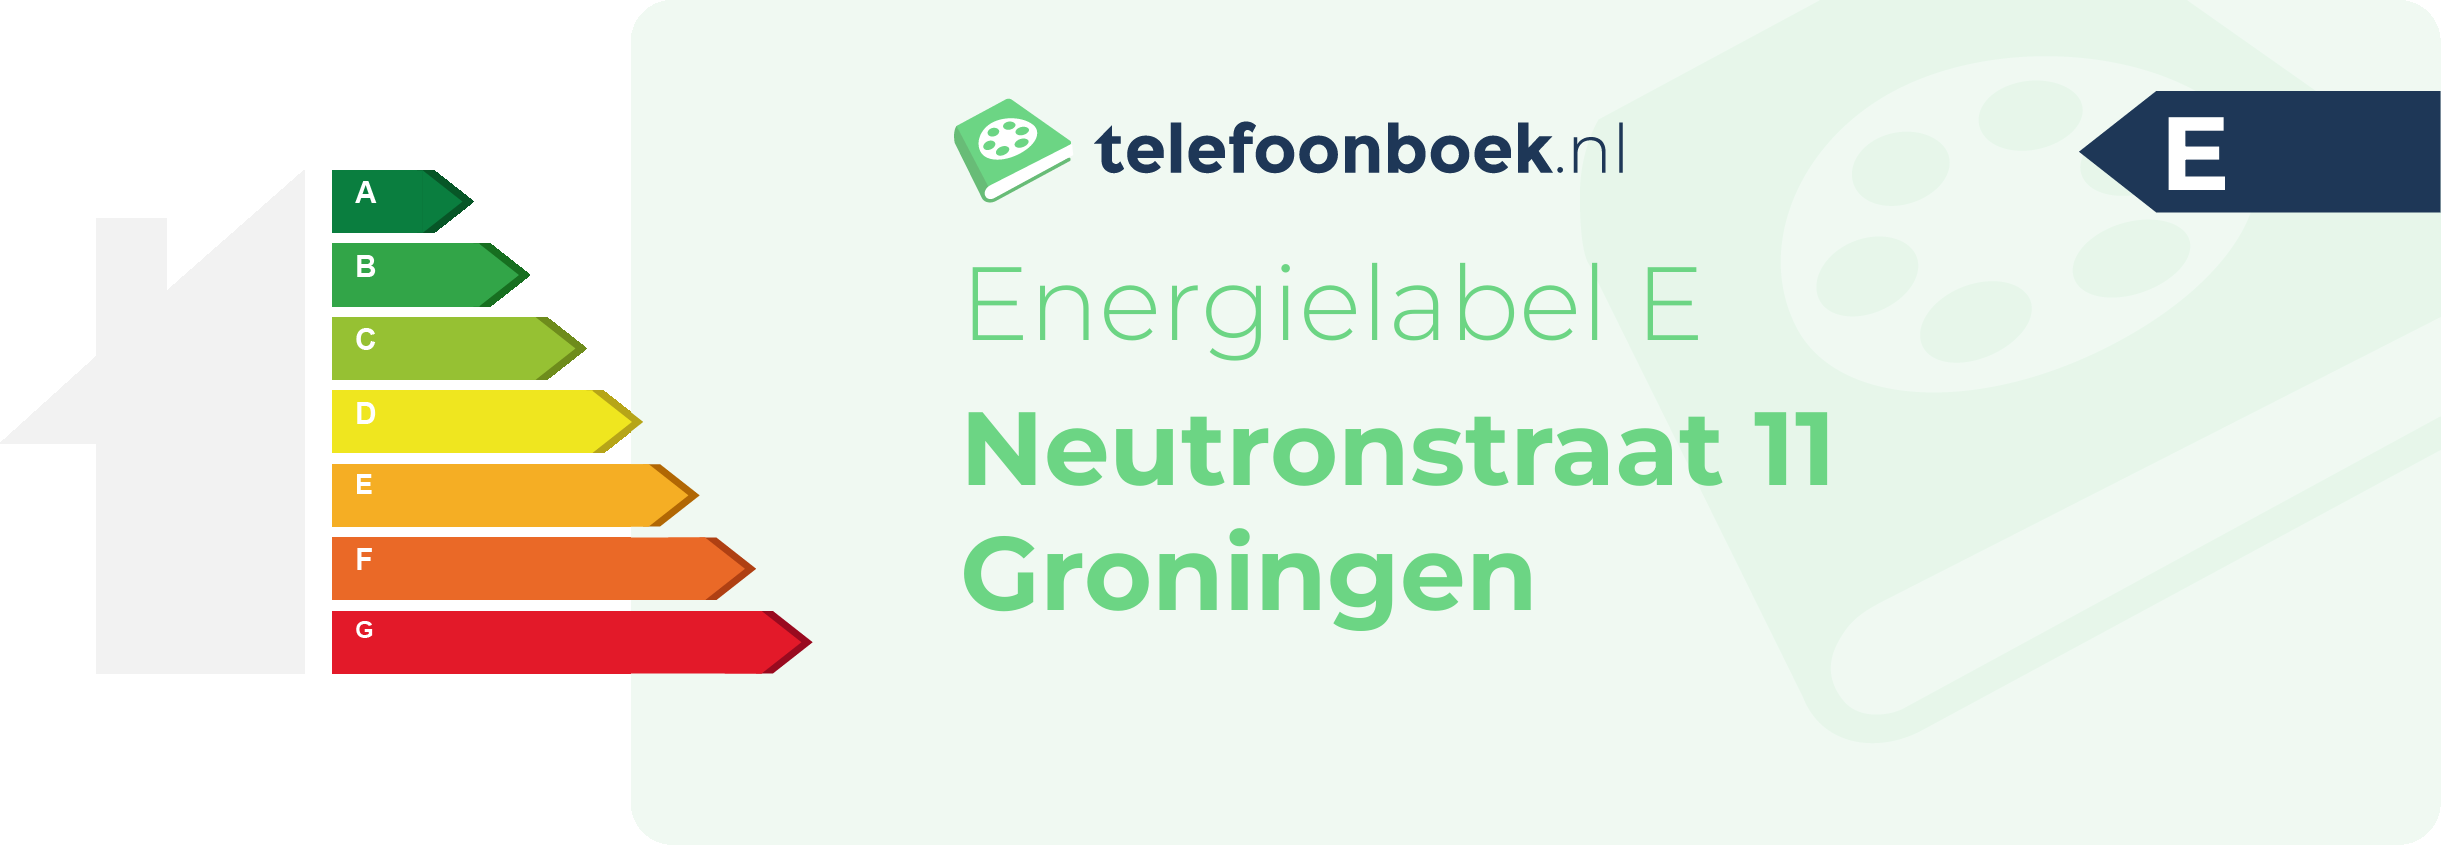 Energielabel Neutronstraat 11 Groningen